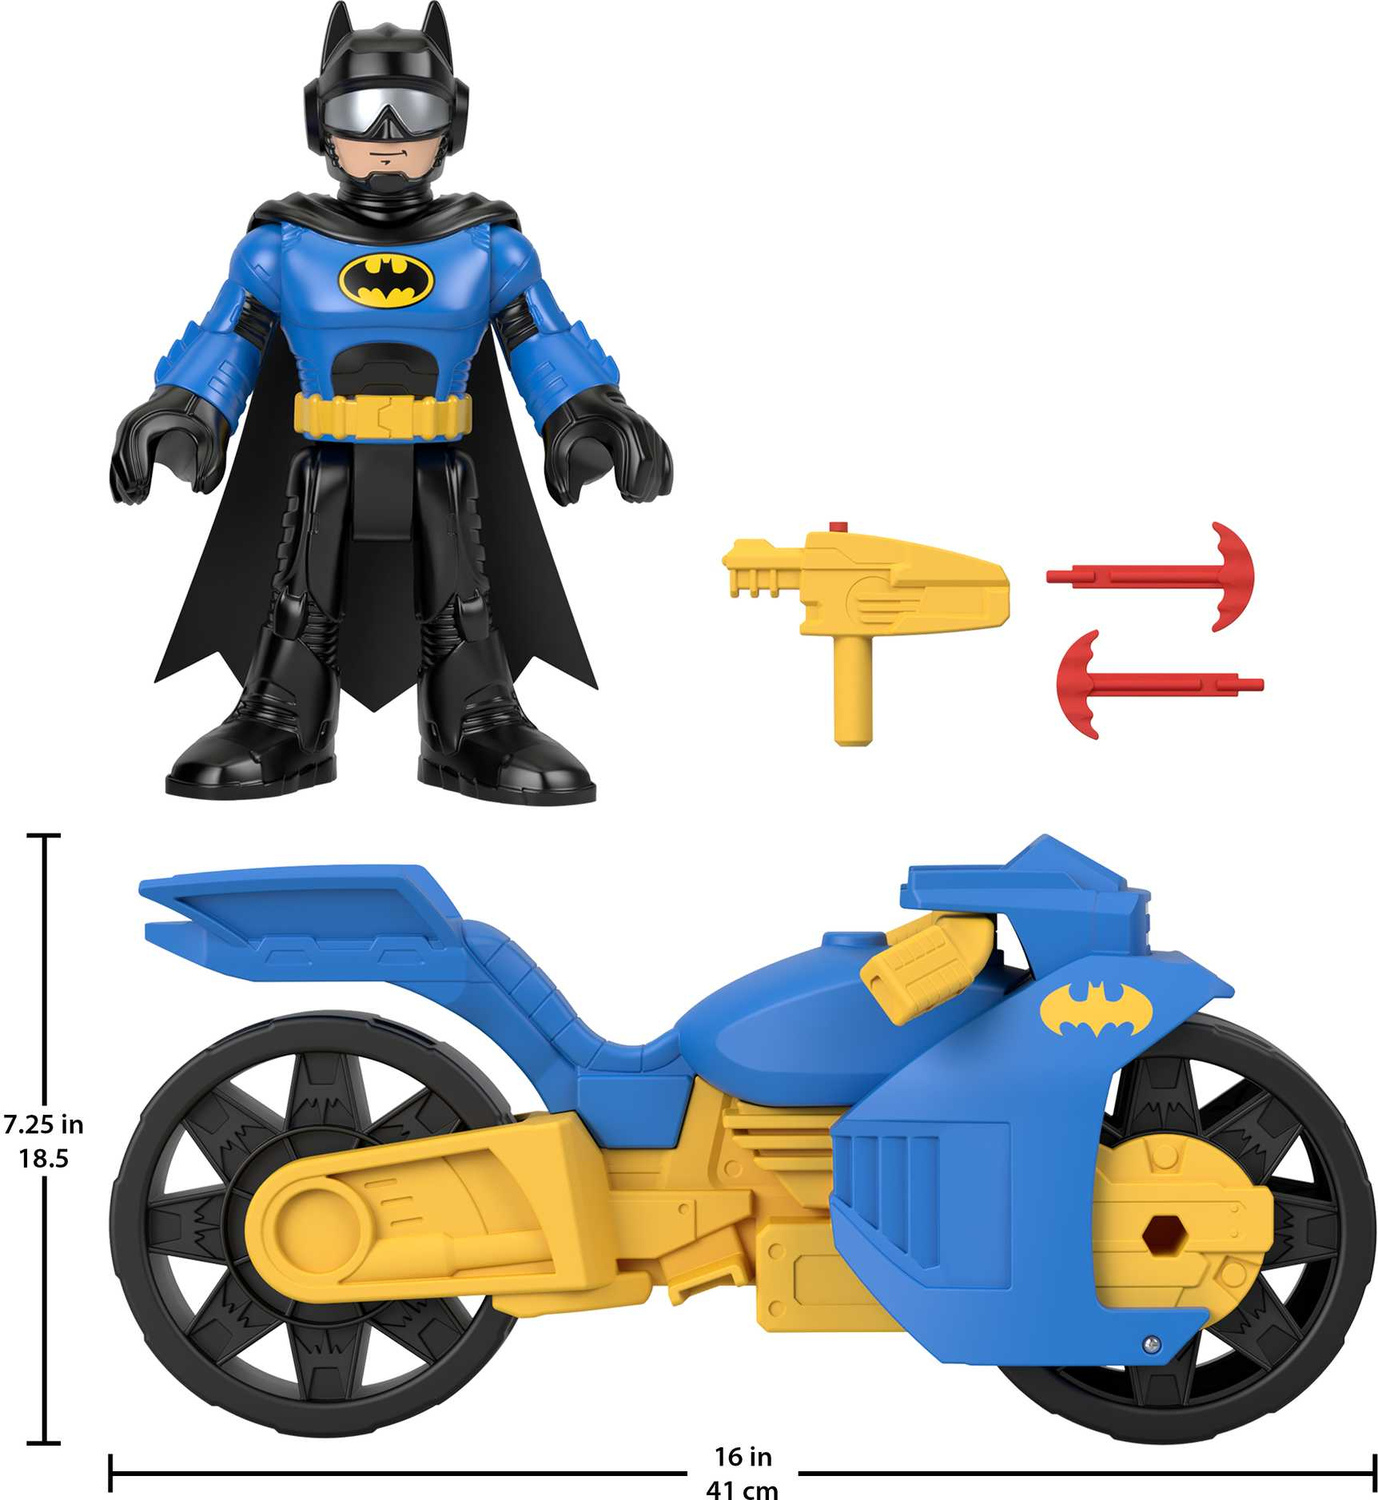  Imaginext DC Super Friends Batcyle XL & Batman